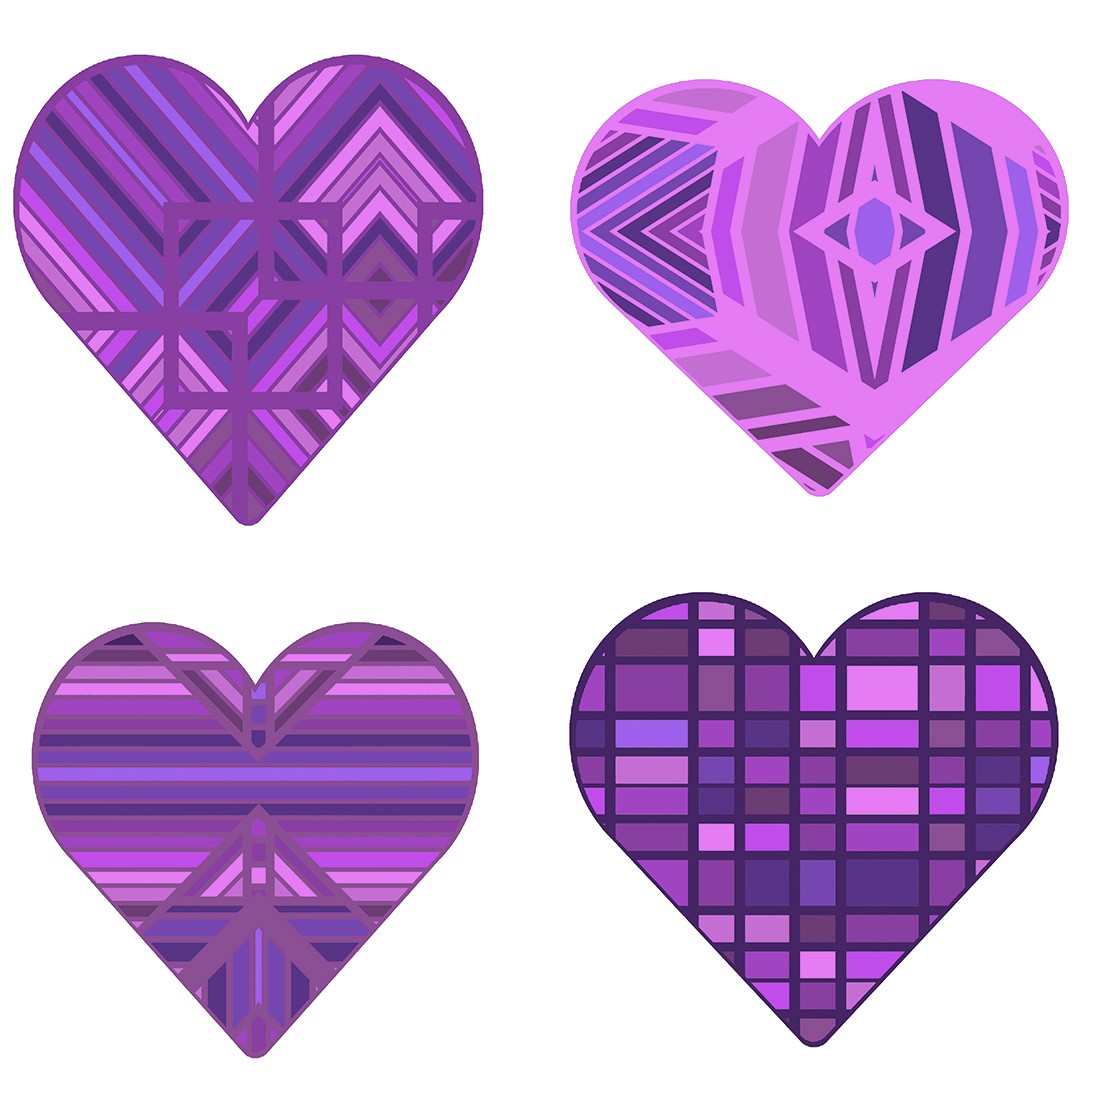 Pretty in Purple Hearts preview image.